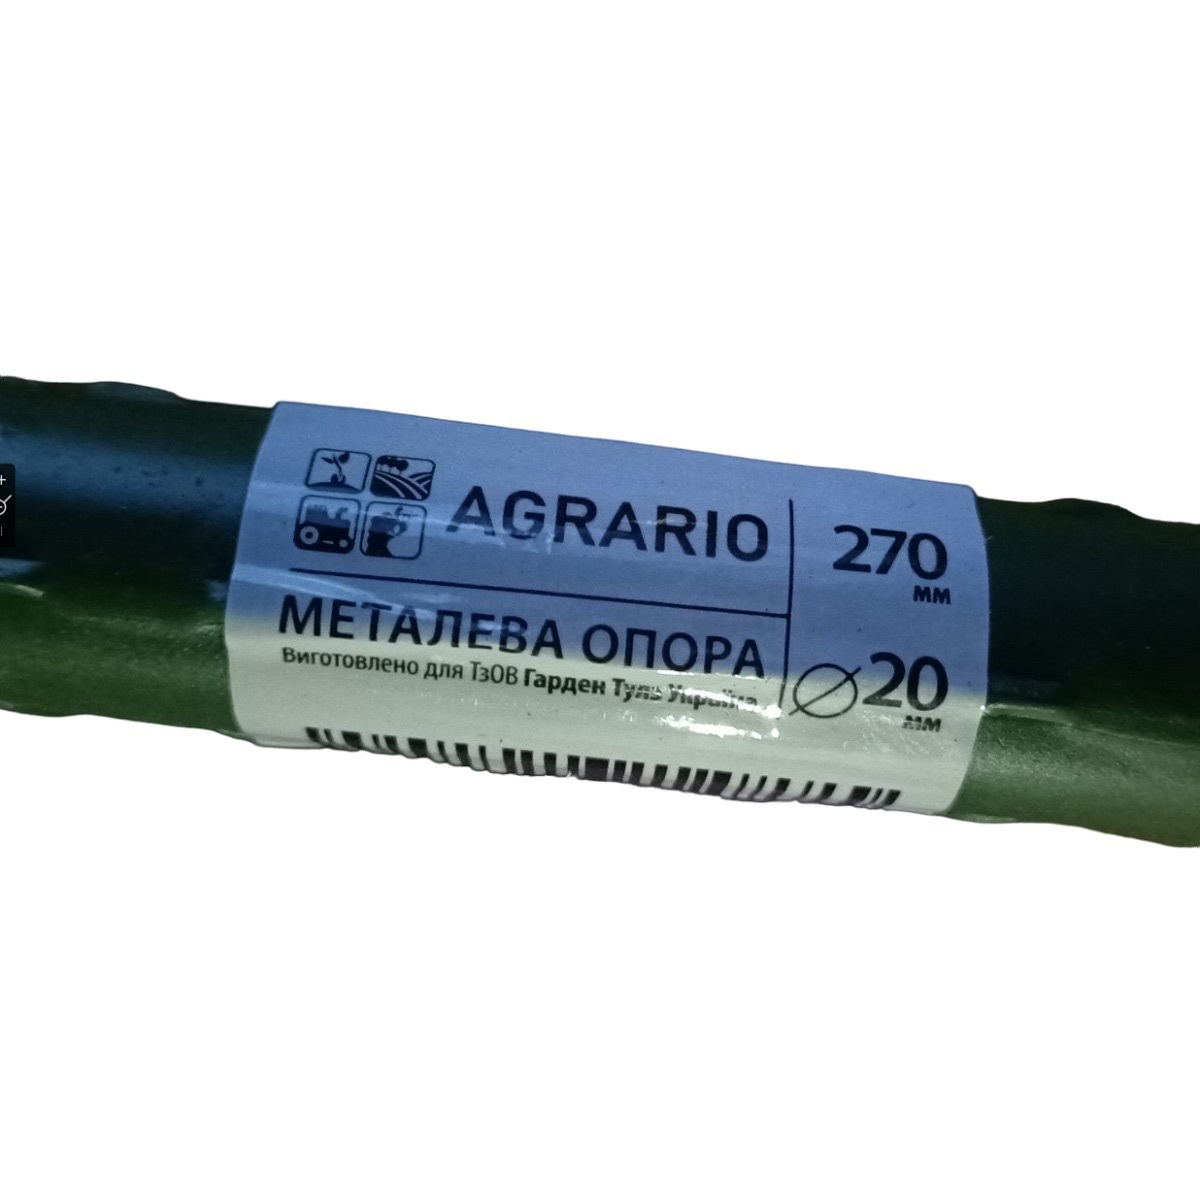 Металлическая опора для растений Agrario 8-90 с пластиковым покрытием 8 мм х 0,9 м / Аграрио 8-90